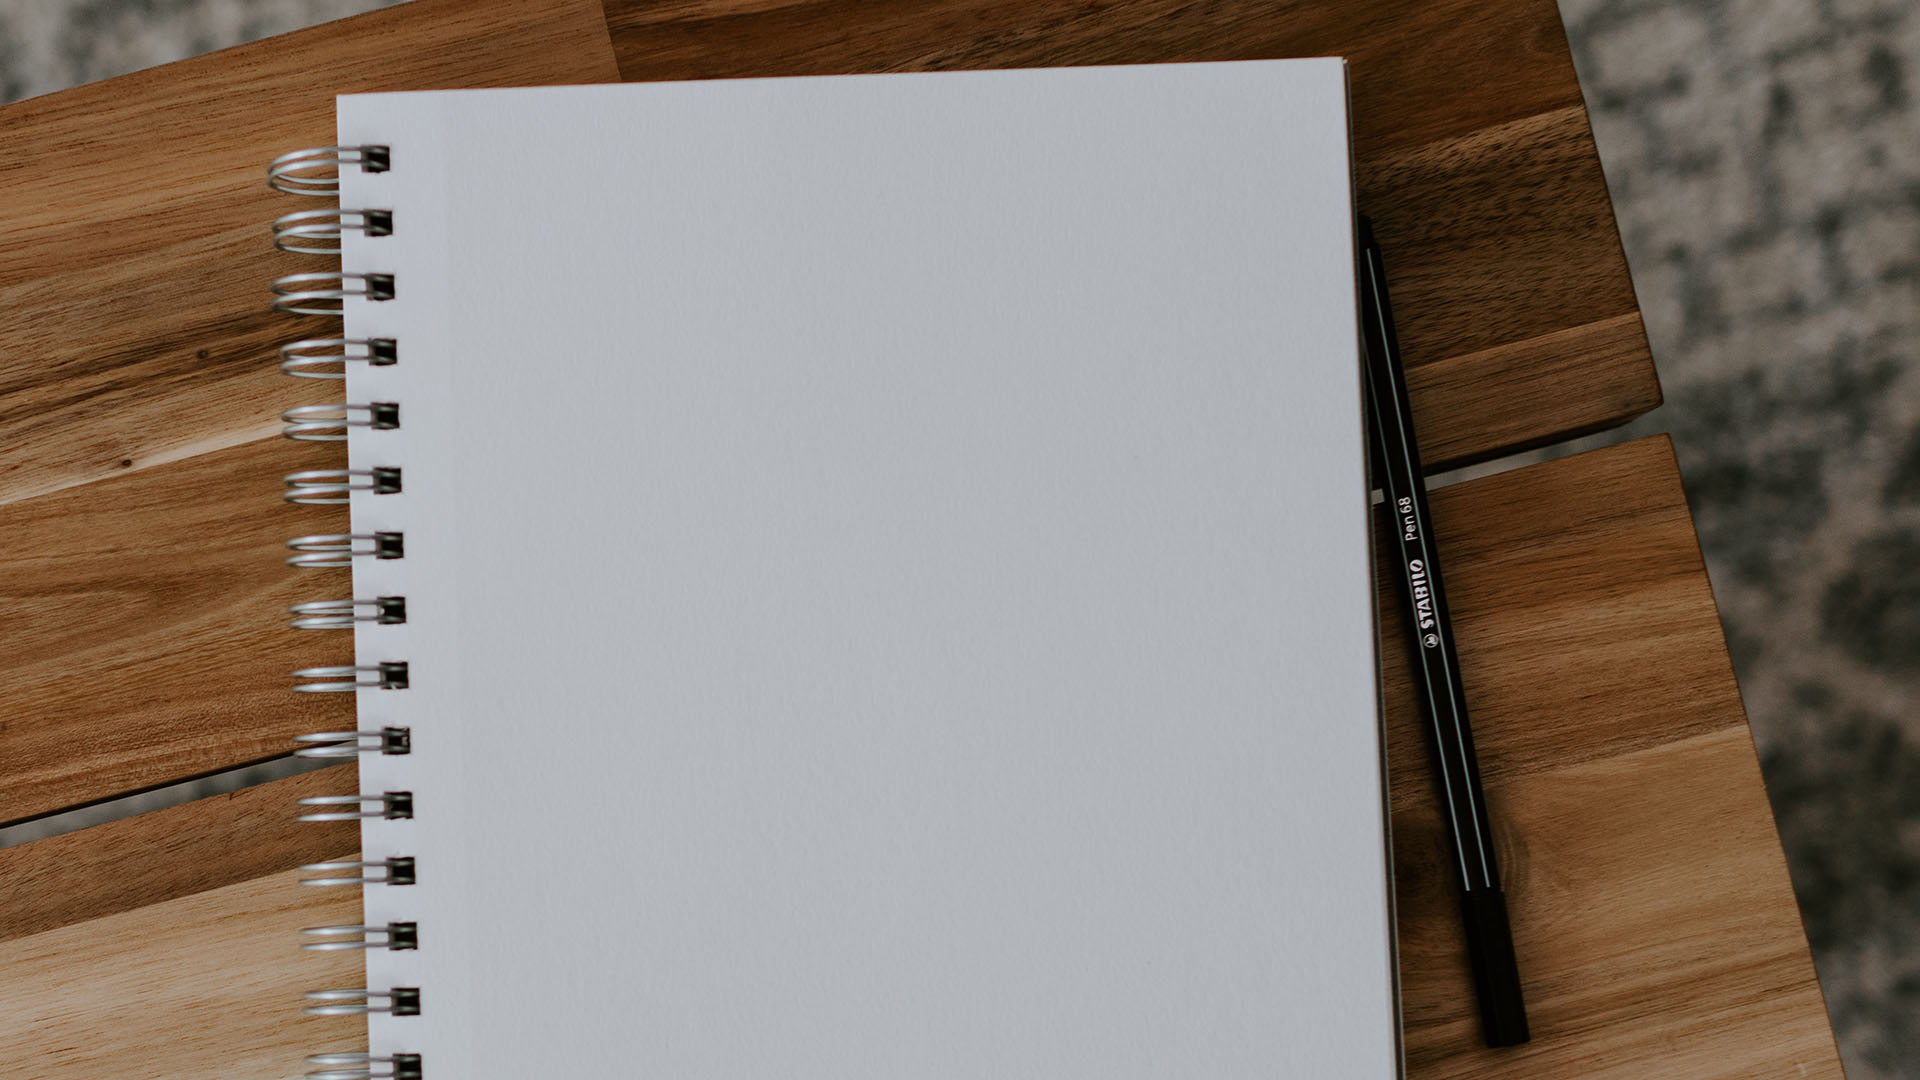 En blank anteckningsbok ligger på ett träfärgat bord bredvid en penna.